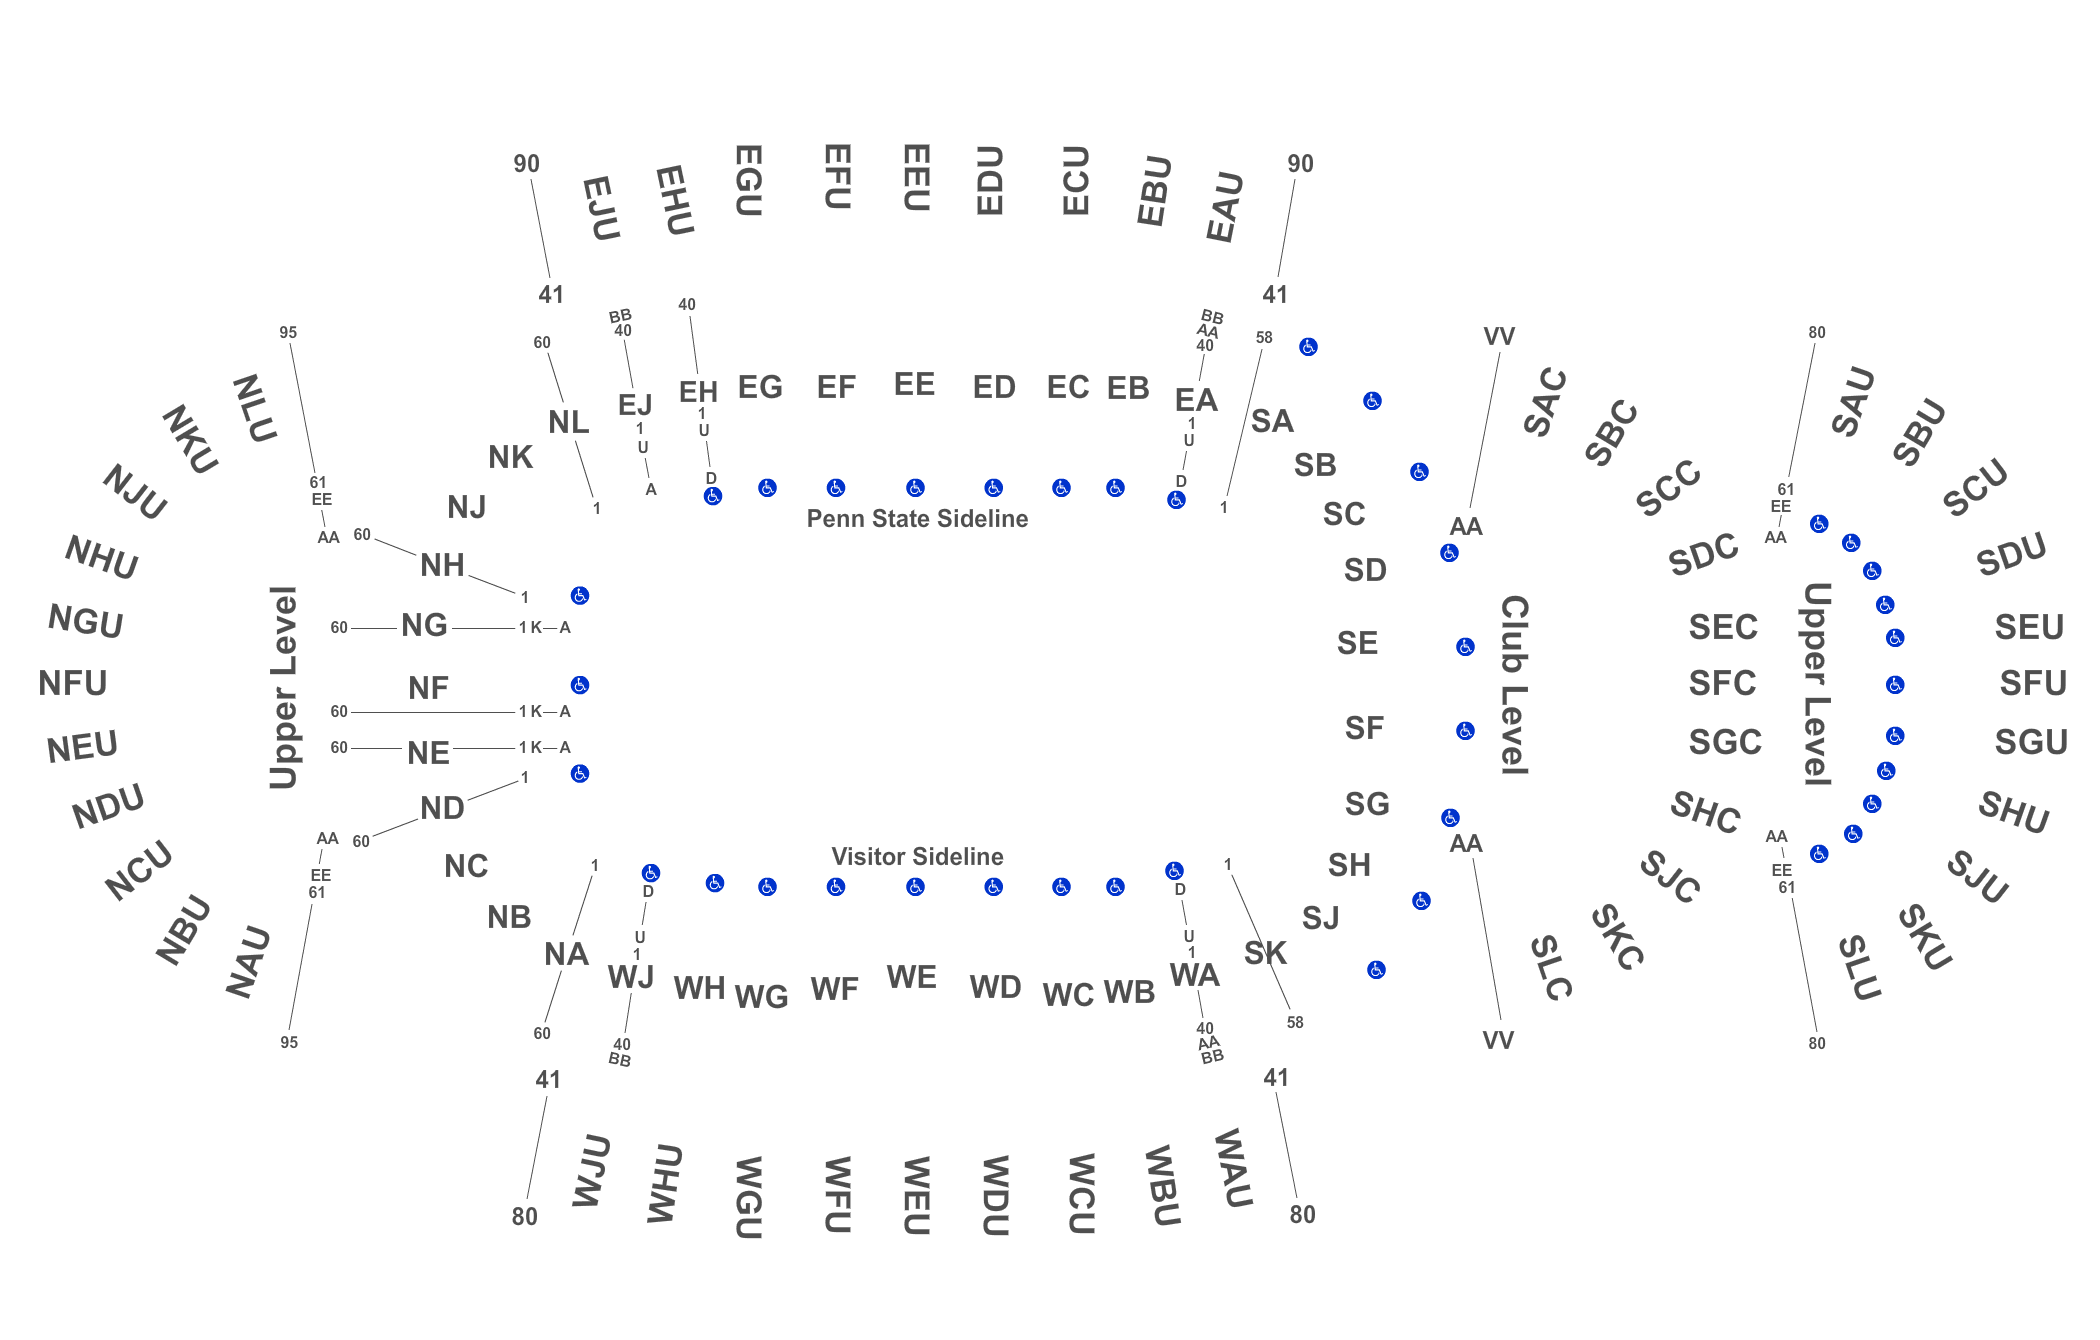 Psu Stadium Seating Chart